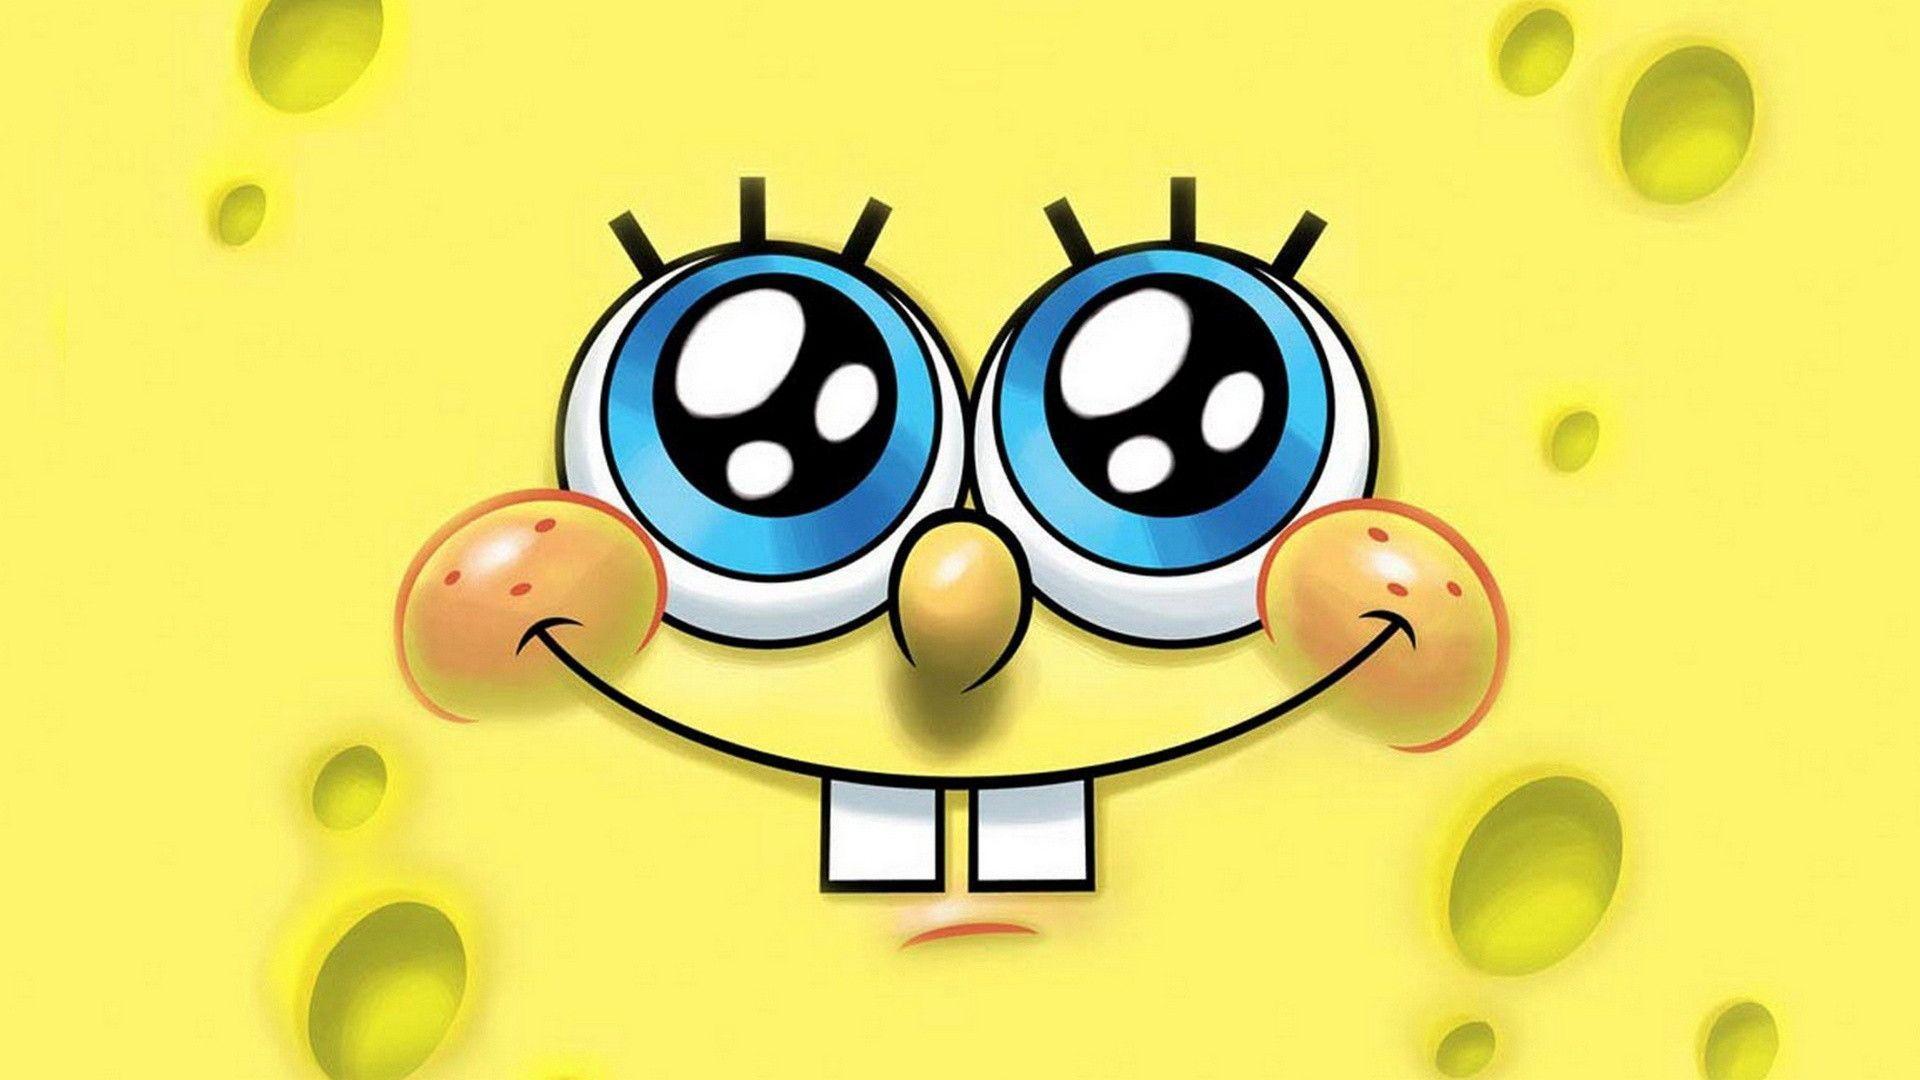 Cute Spongebob Squarepants Wallpaper 1080p